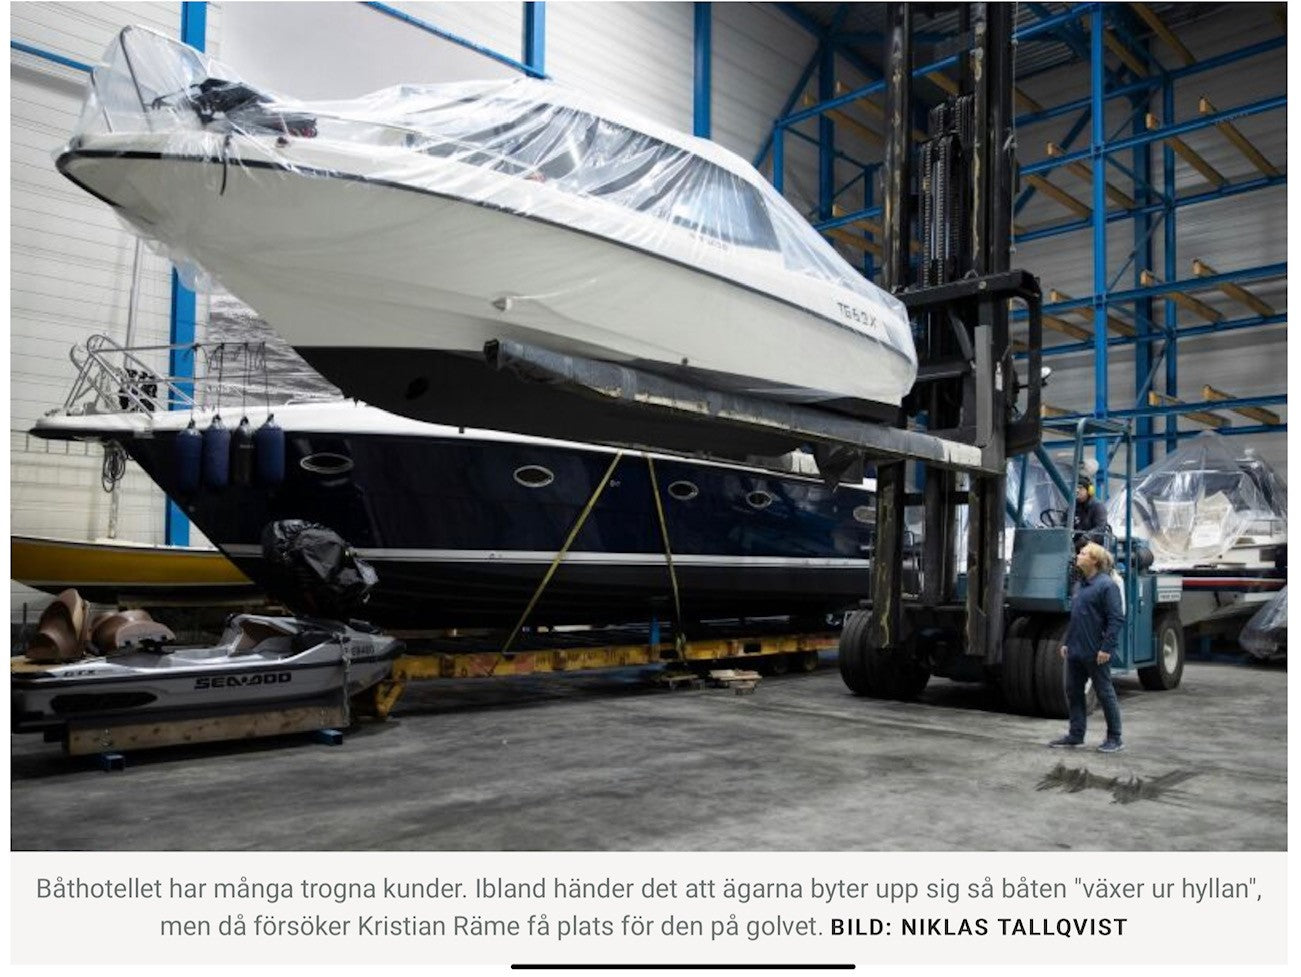 HBL: Ont om båtförvaring i Helsingfors - Ingåvarv fyller hyllorna med stadsbornas båtar